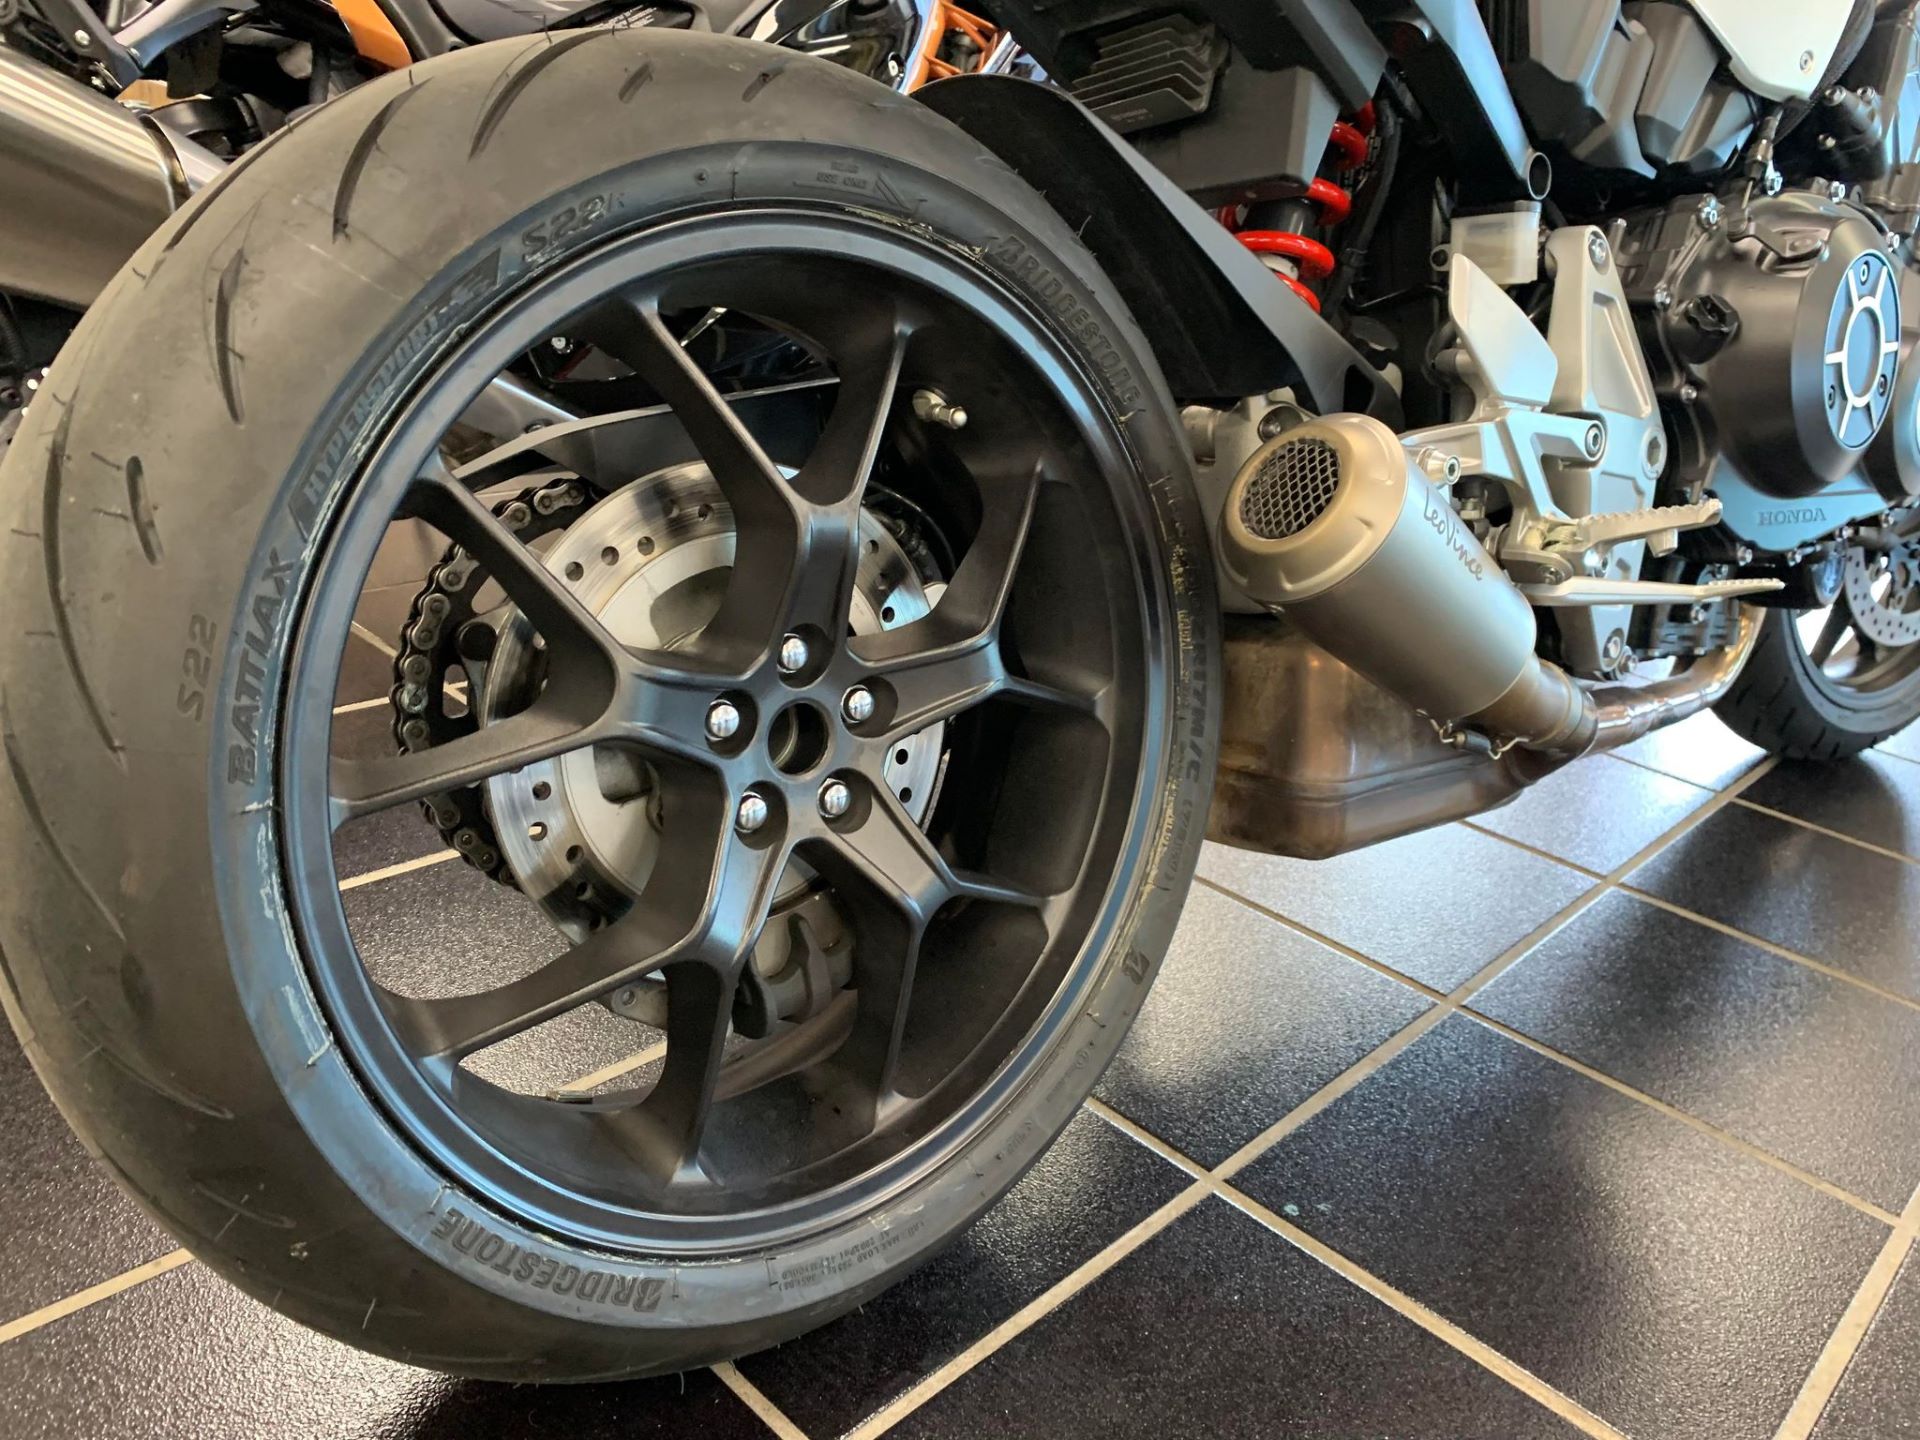 2019 Honda CB1000R ABS in Oklahoma City, Oklahoma - Photo 8